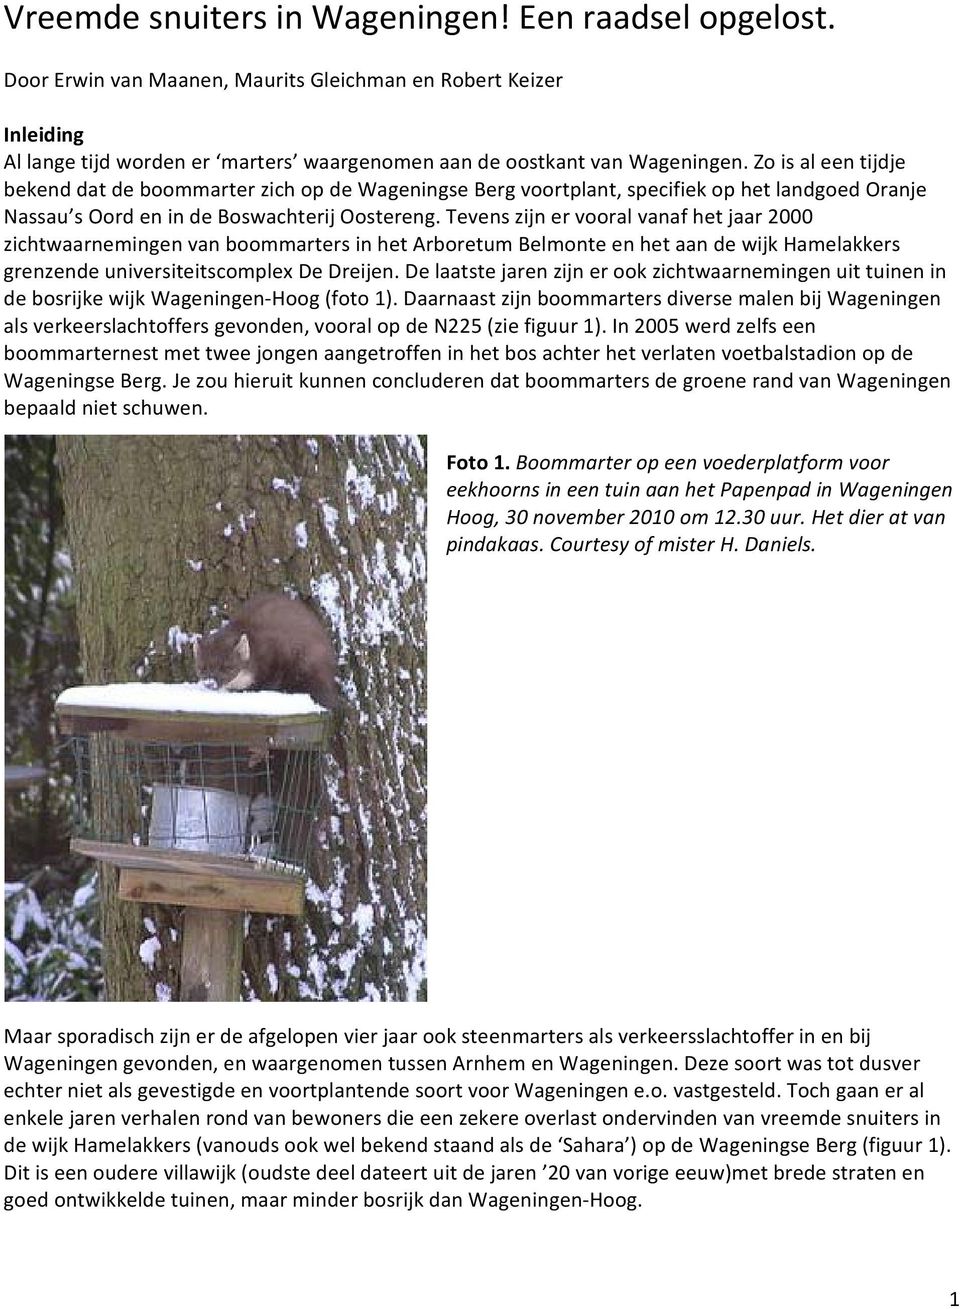 Tevens zijn er vooral vanaf het jaar 2000 zichtwaarnemingen van boommarters in het Arboretum Belmonte en het aan de wijk Hamelakkers grenzende universiteitscomplex De Dreijen.